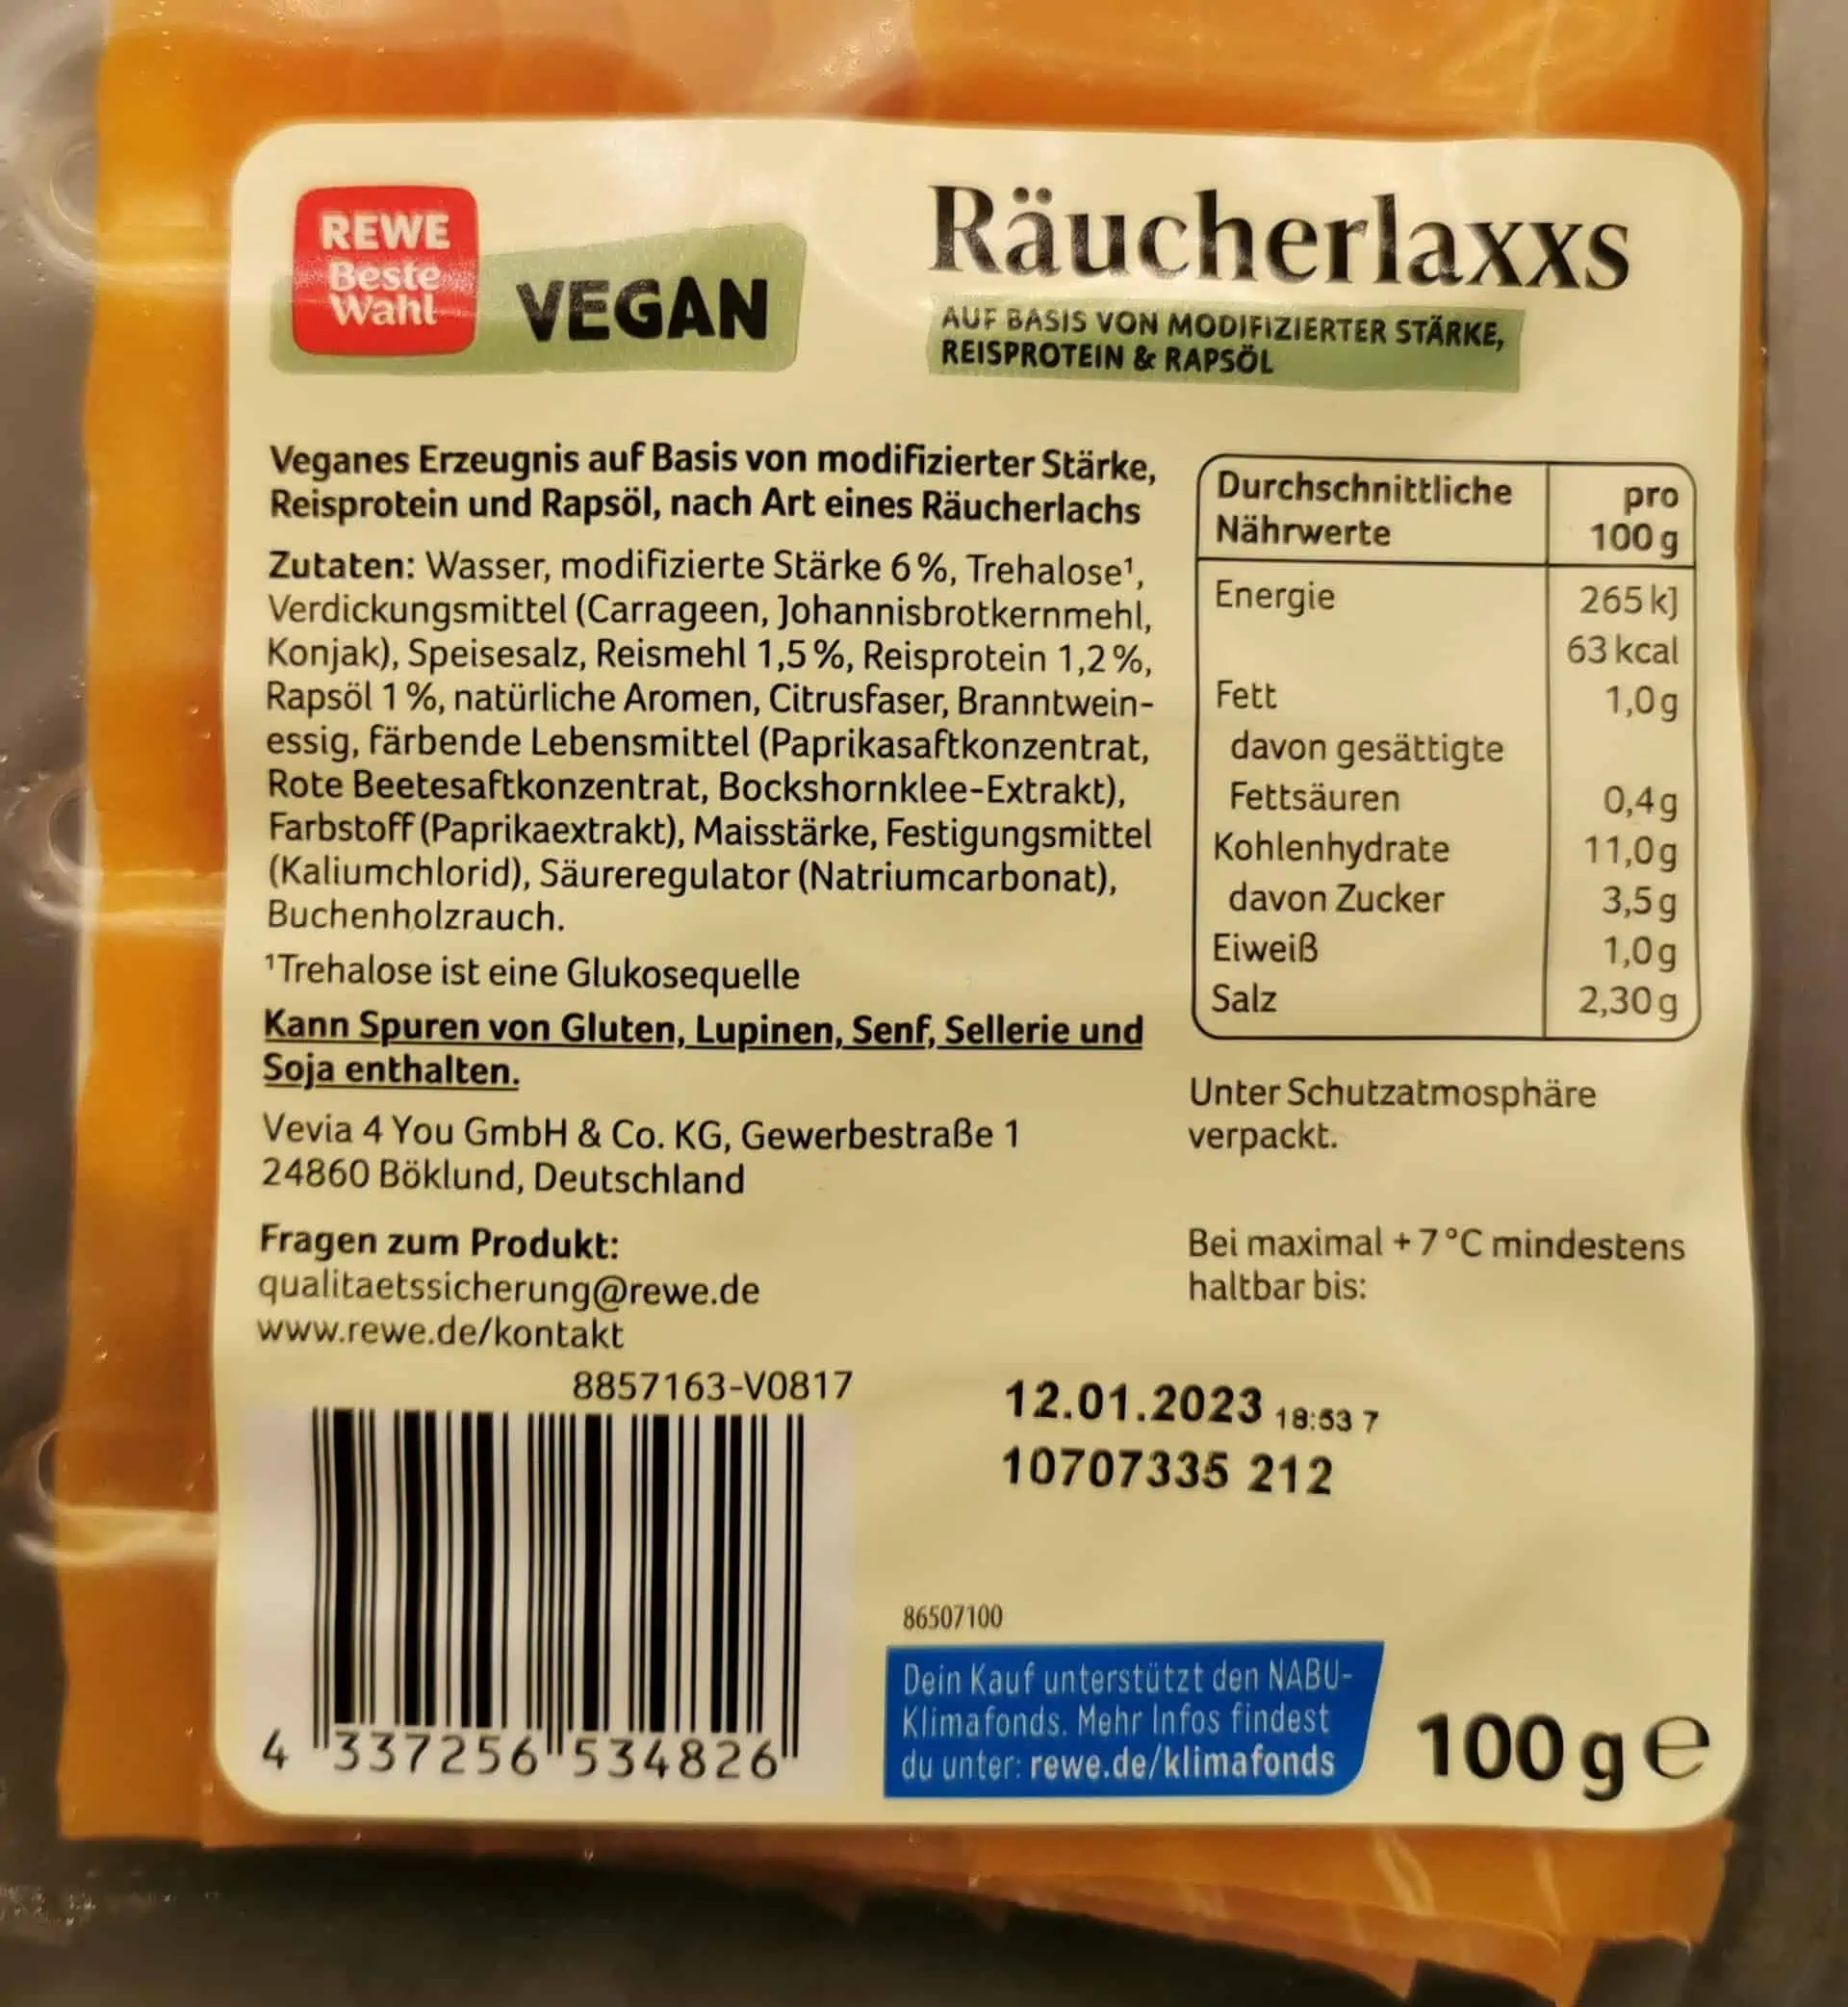 Rewe - Veganer Räucherlaxxs Inhaltsstoffe Nährwerte